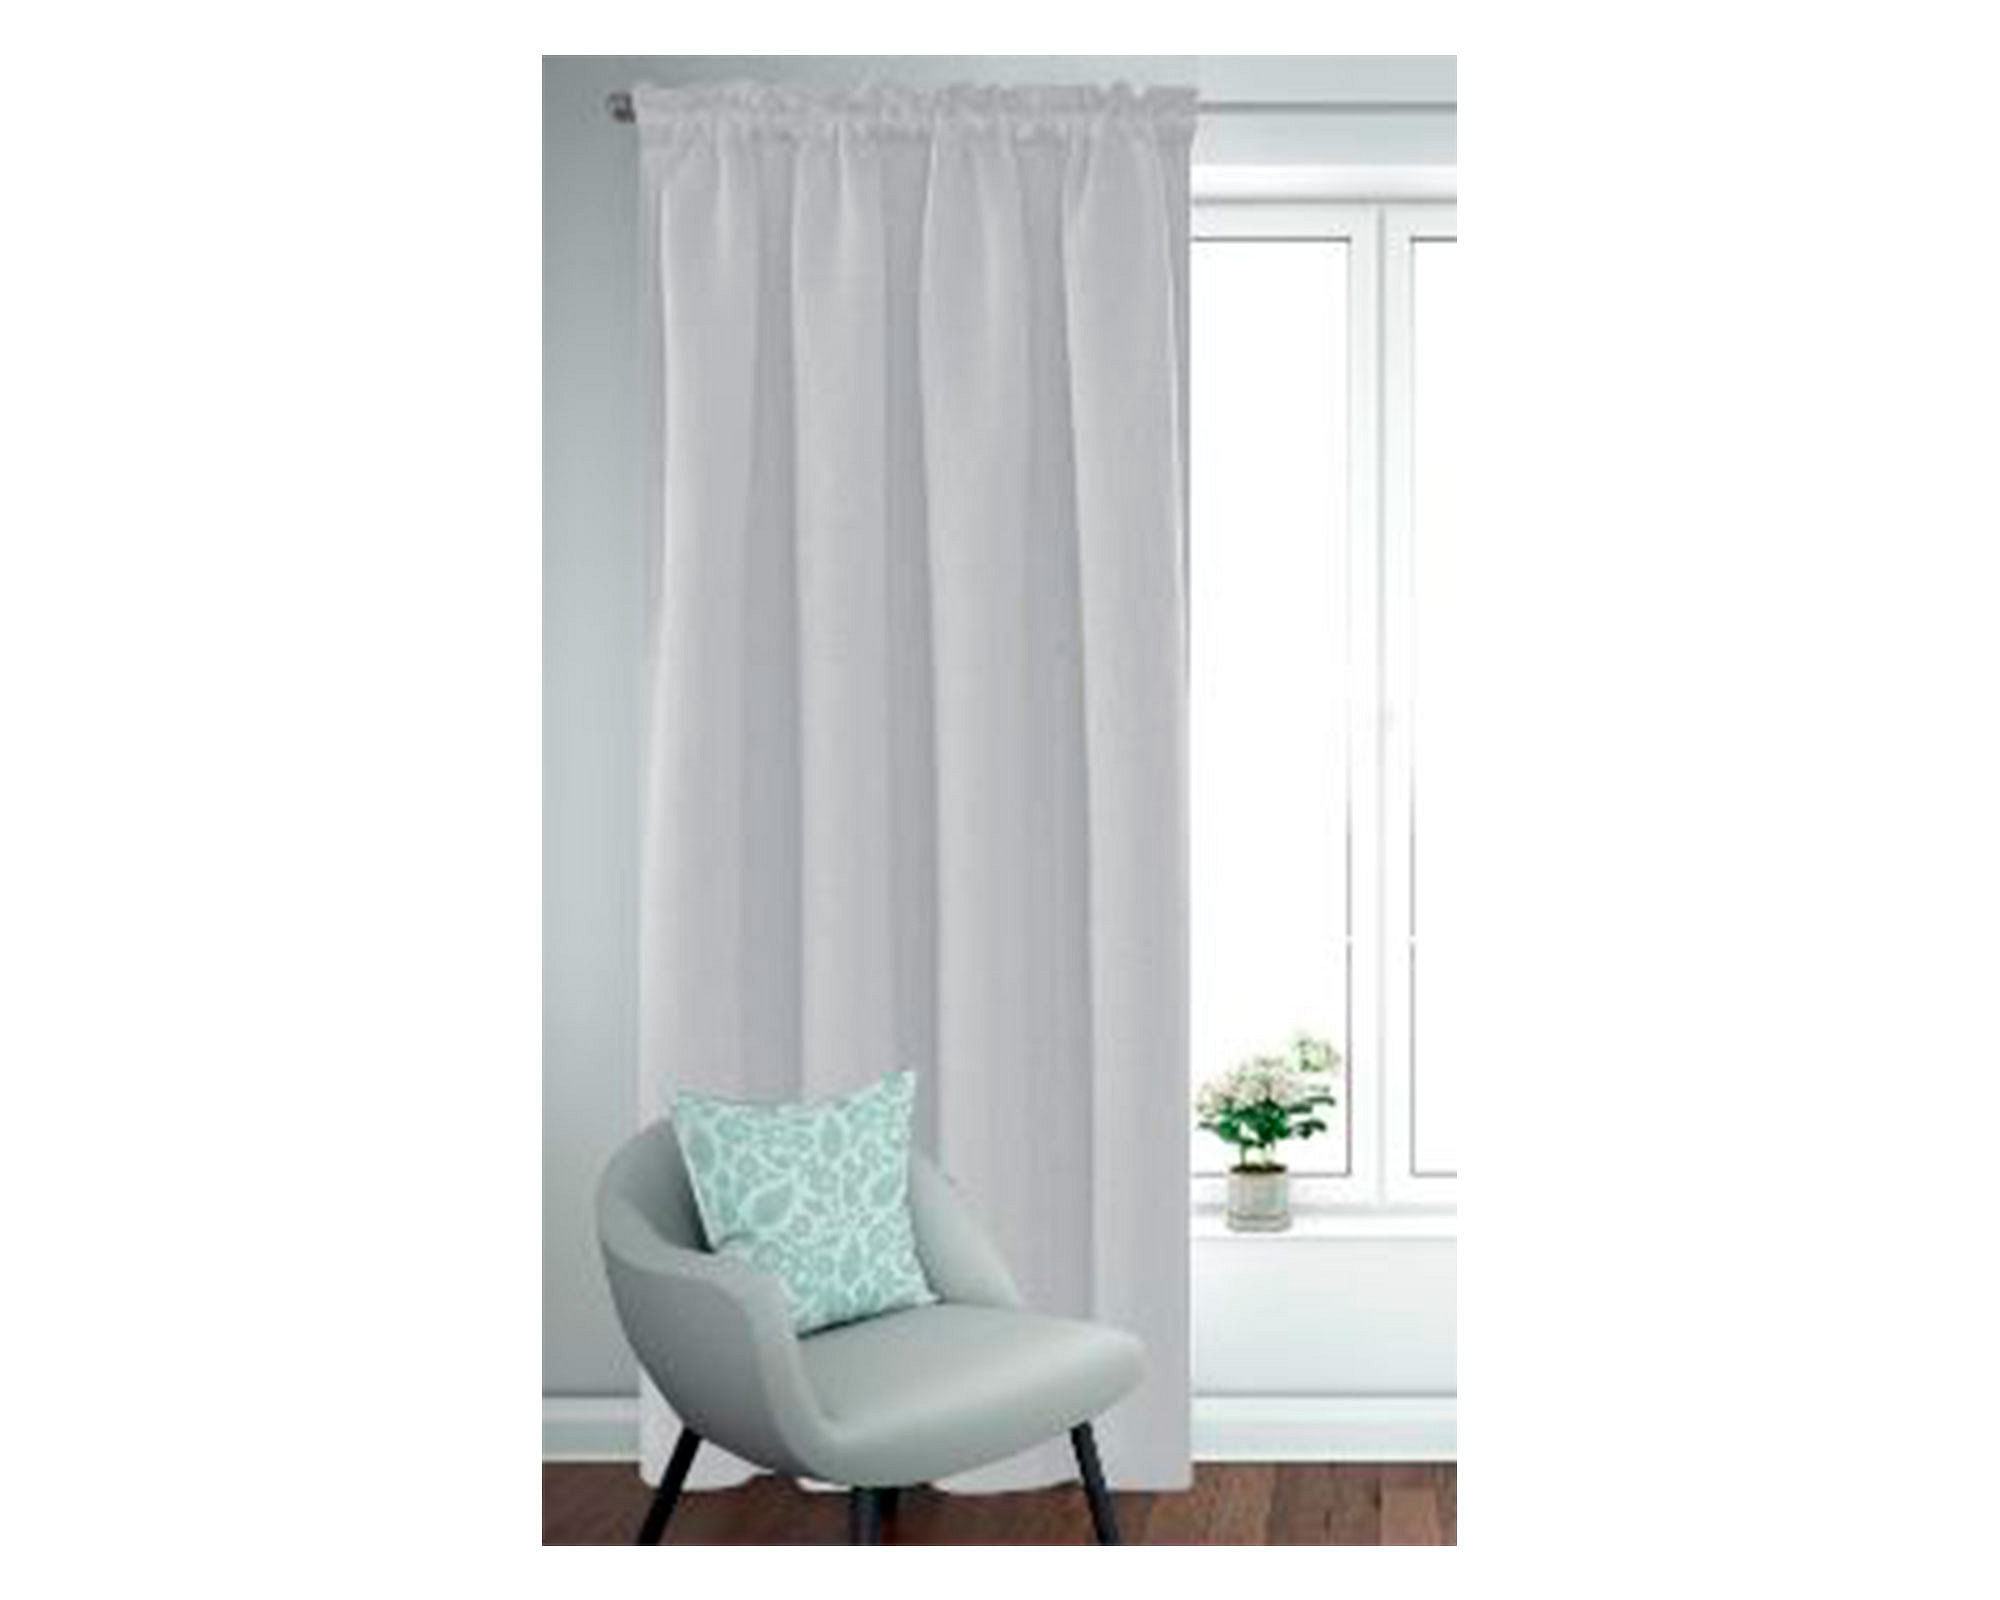 1 pieza de cortina Aoresac hogar Simple Color sólido Blackout doble cara Velcro  cortina tela decorac yeacher